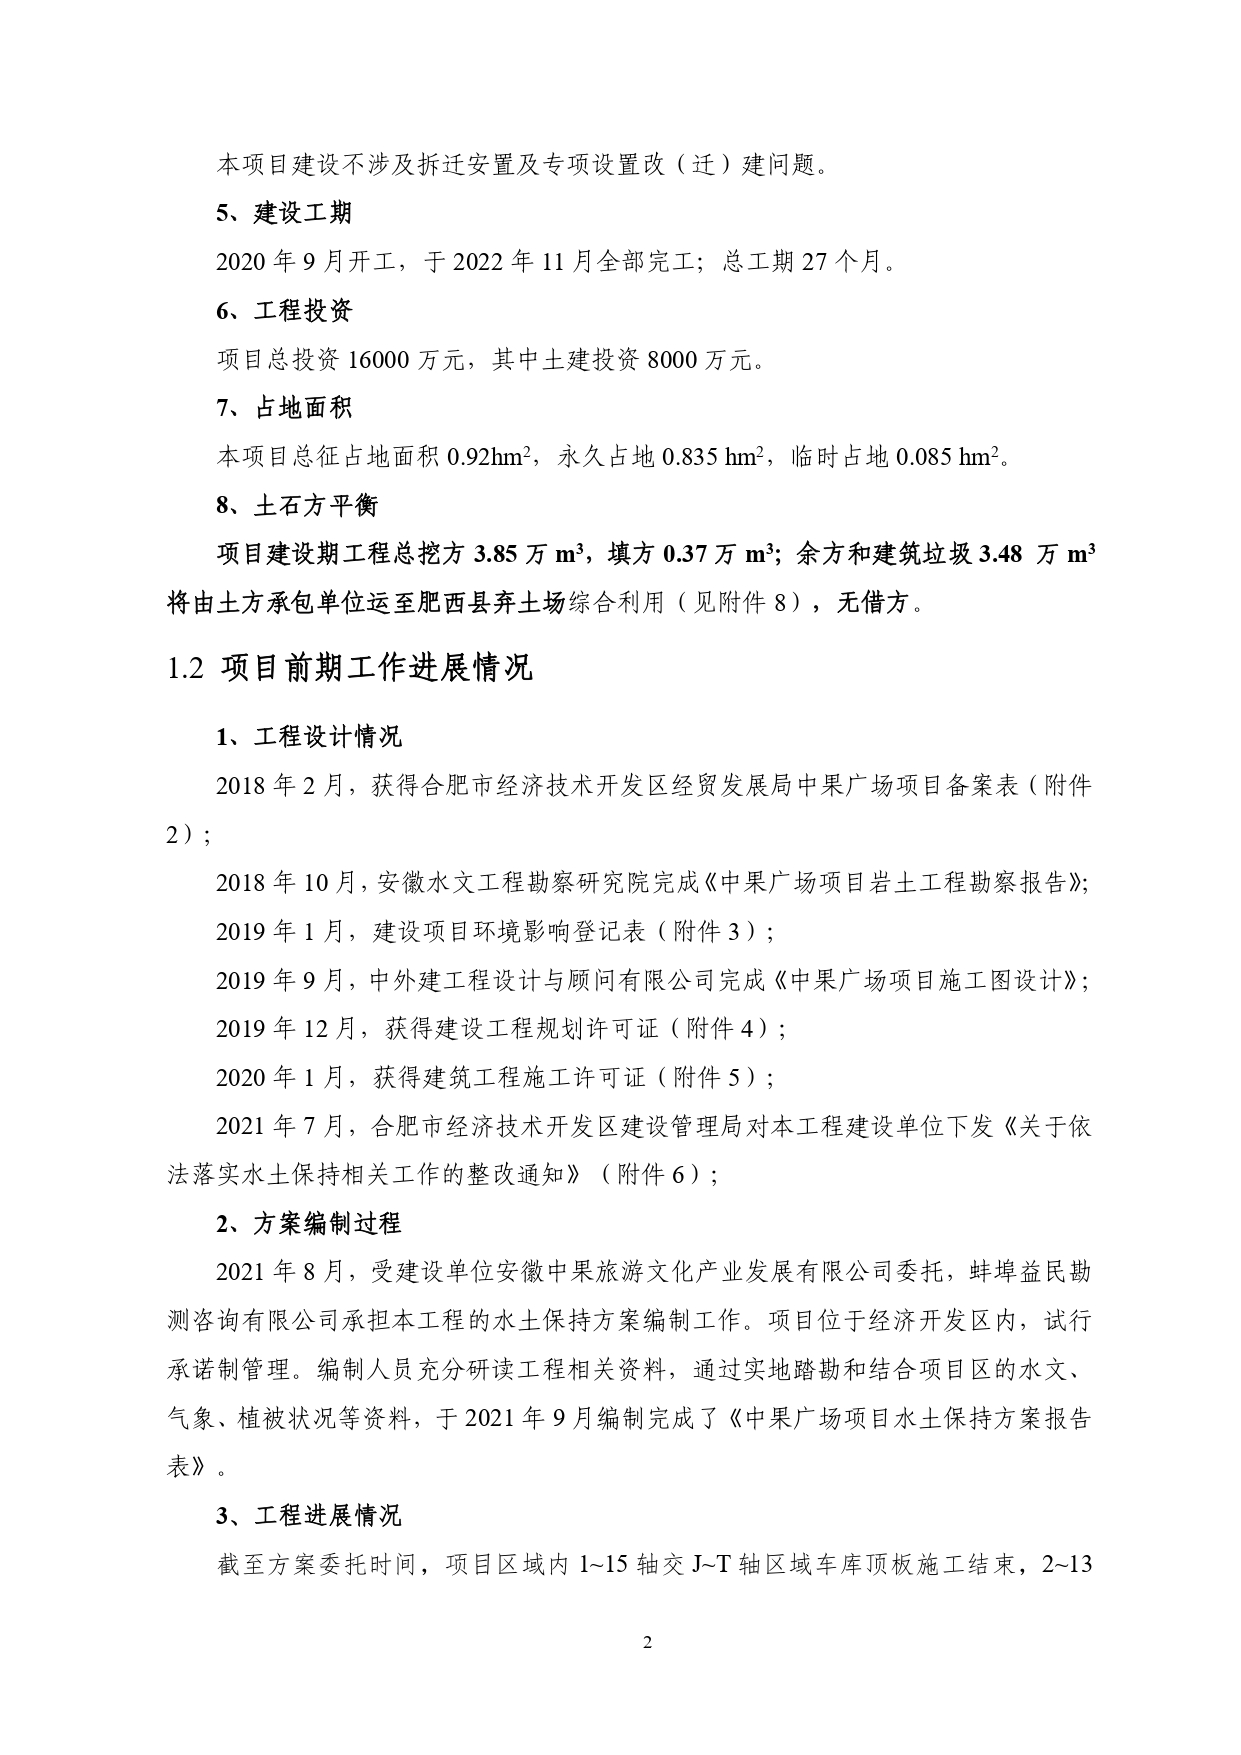 01-中果广场大厦项目水土保持报告表-打印_page-0013.jpg